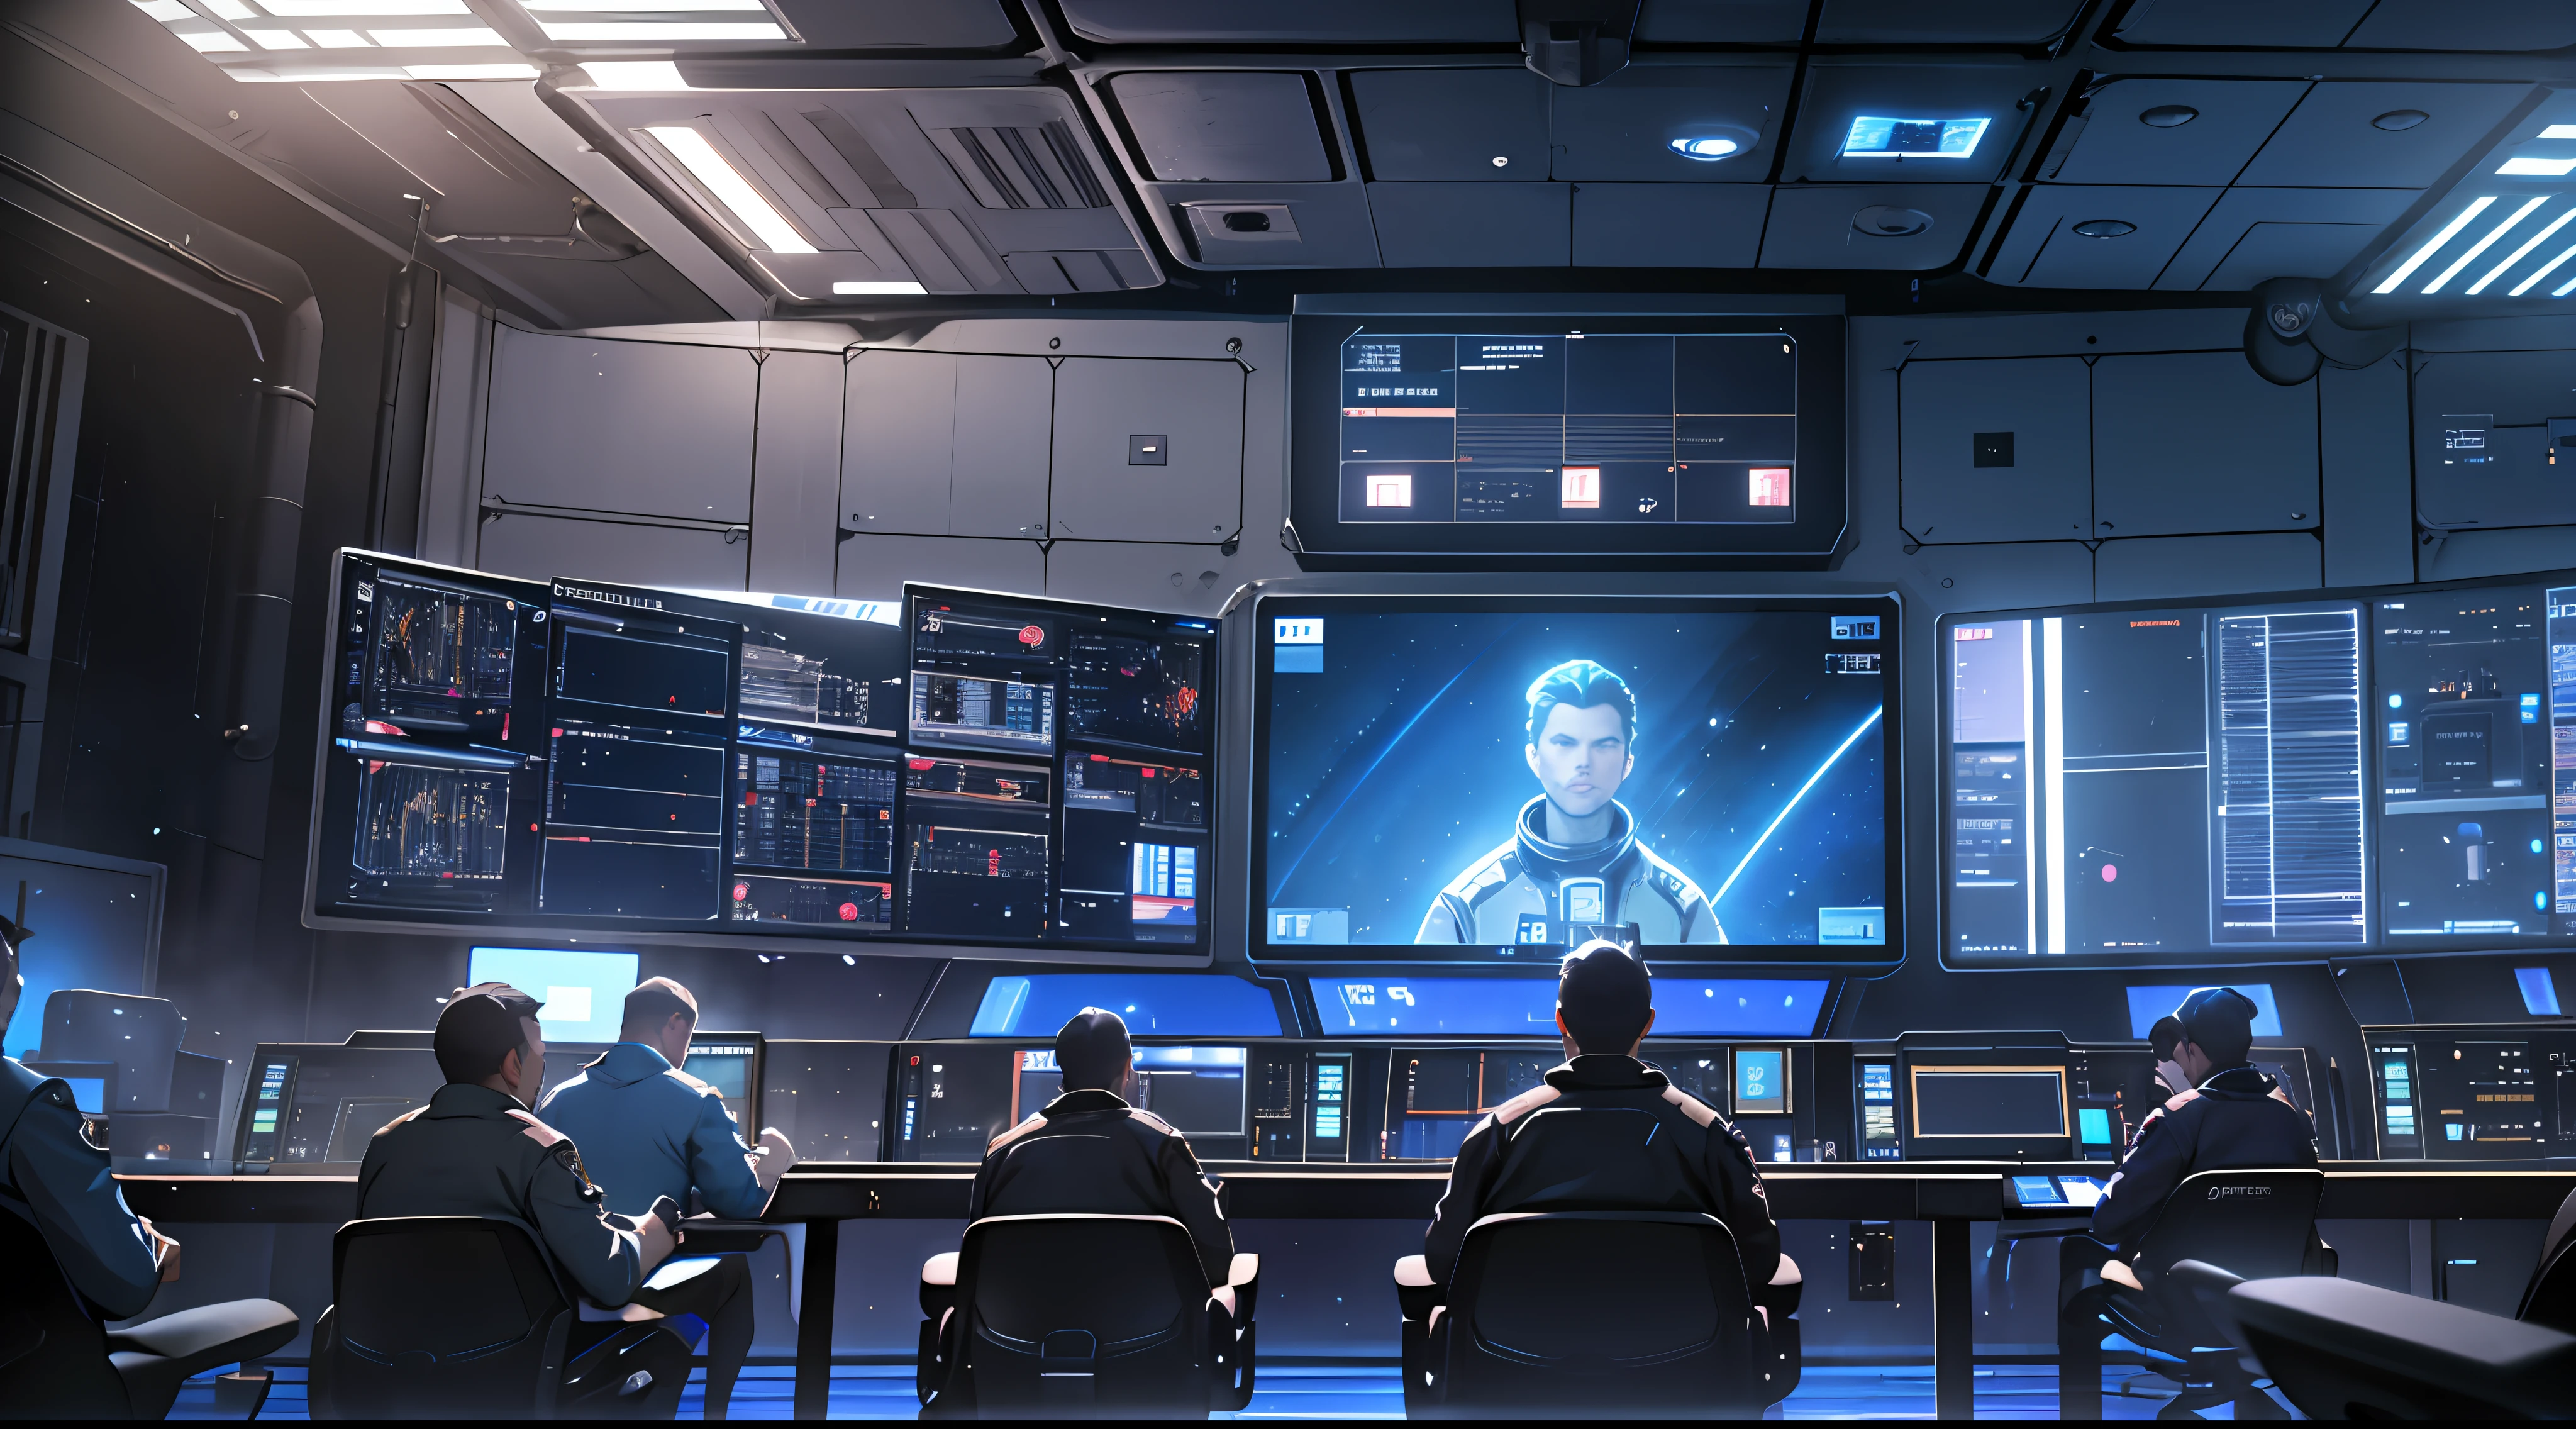 空間控制室, 控制廳, 很多螢幕, 帶有藍光的螢幕, 很多船员, 大家都鼓掌, 現實主義, 高細節, 電影燈光, 酷炫燈光, 特寫, 現實主義, 超高畫質, 高細節, 超細節--auto--s2